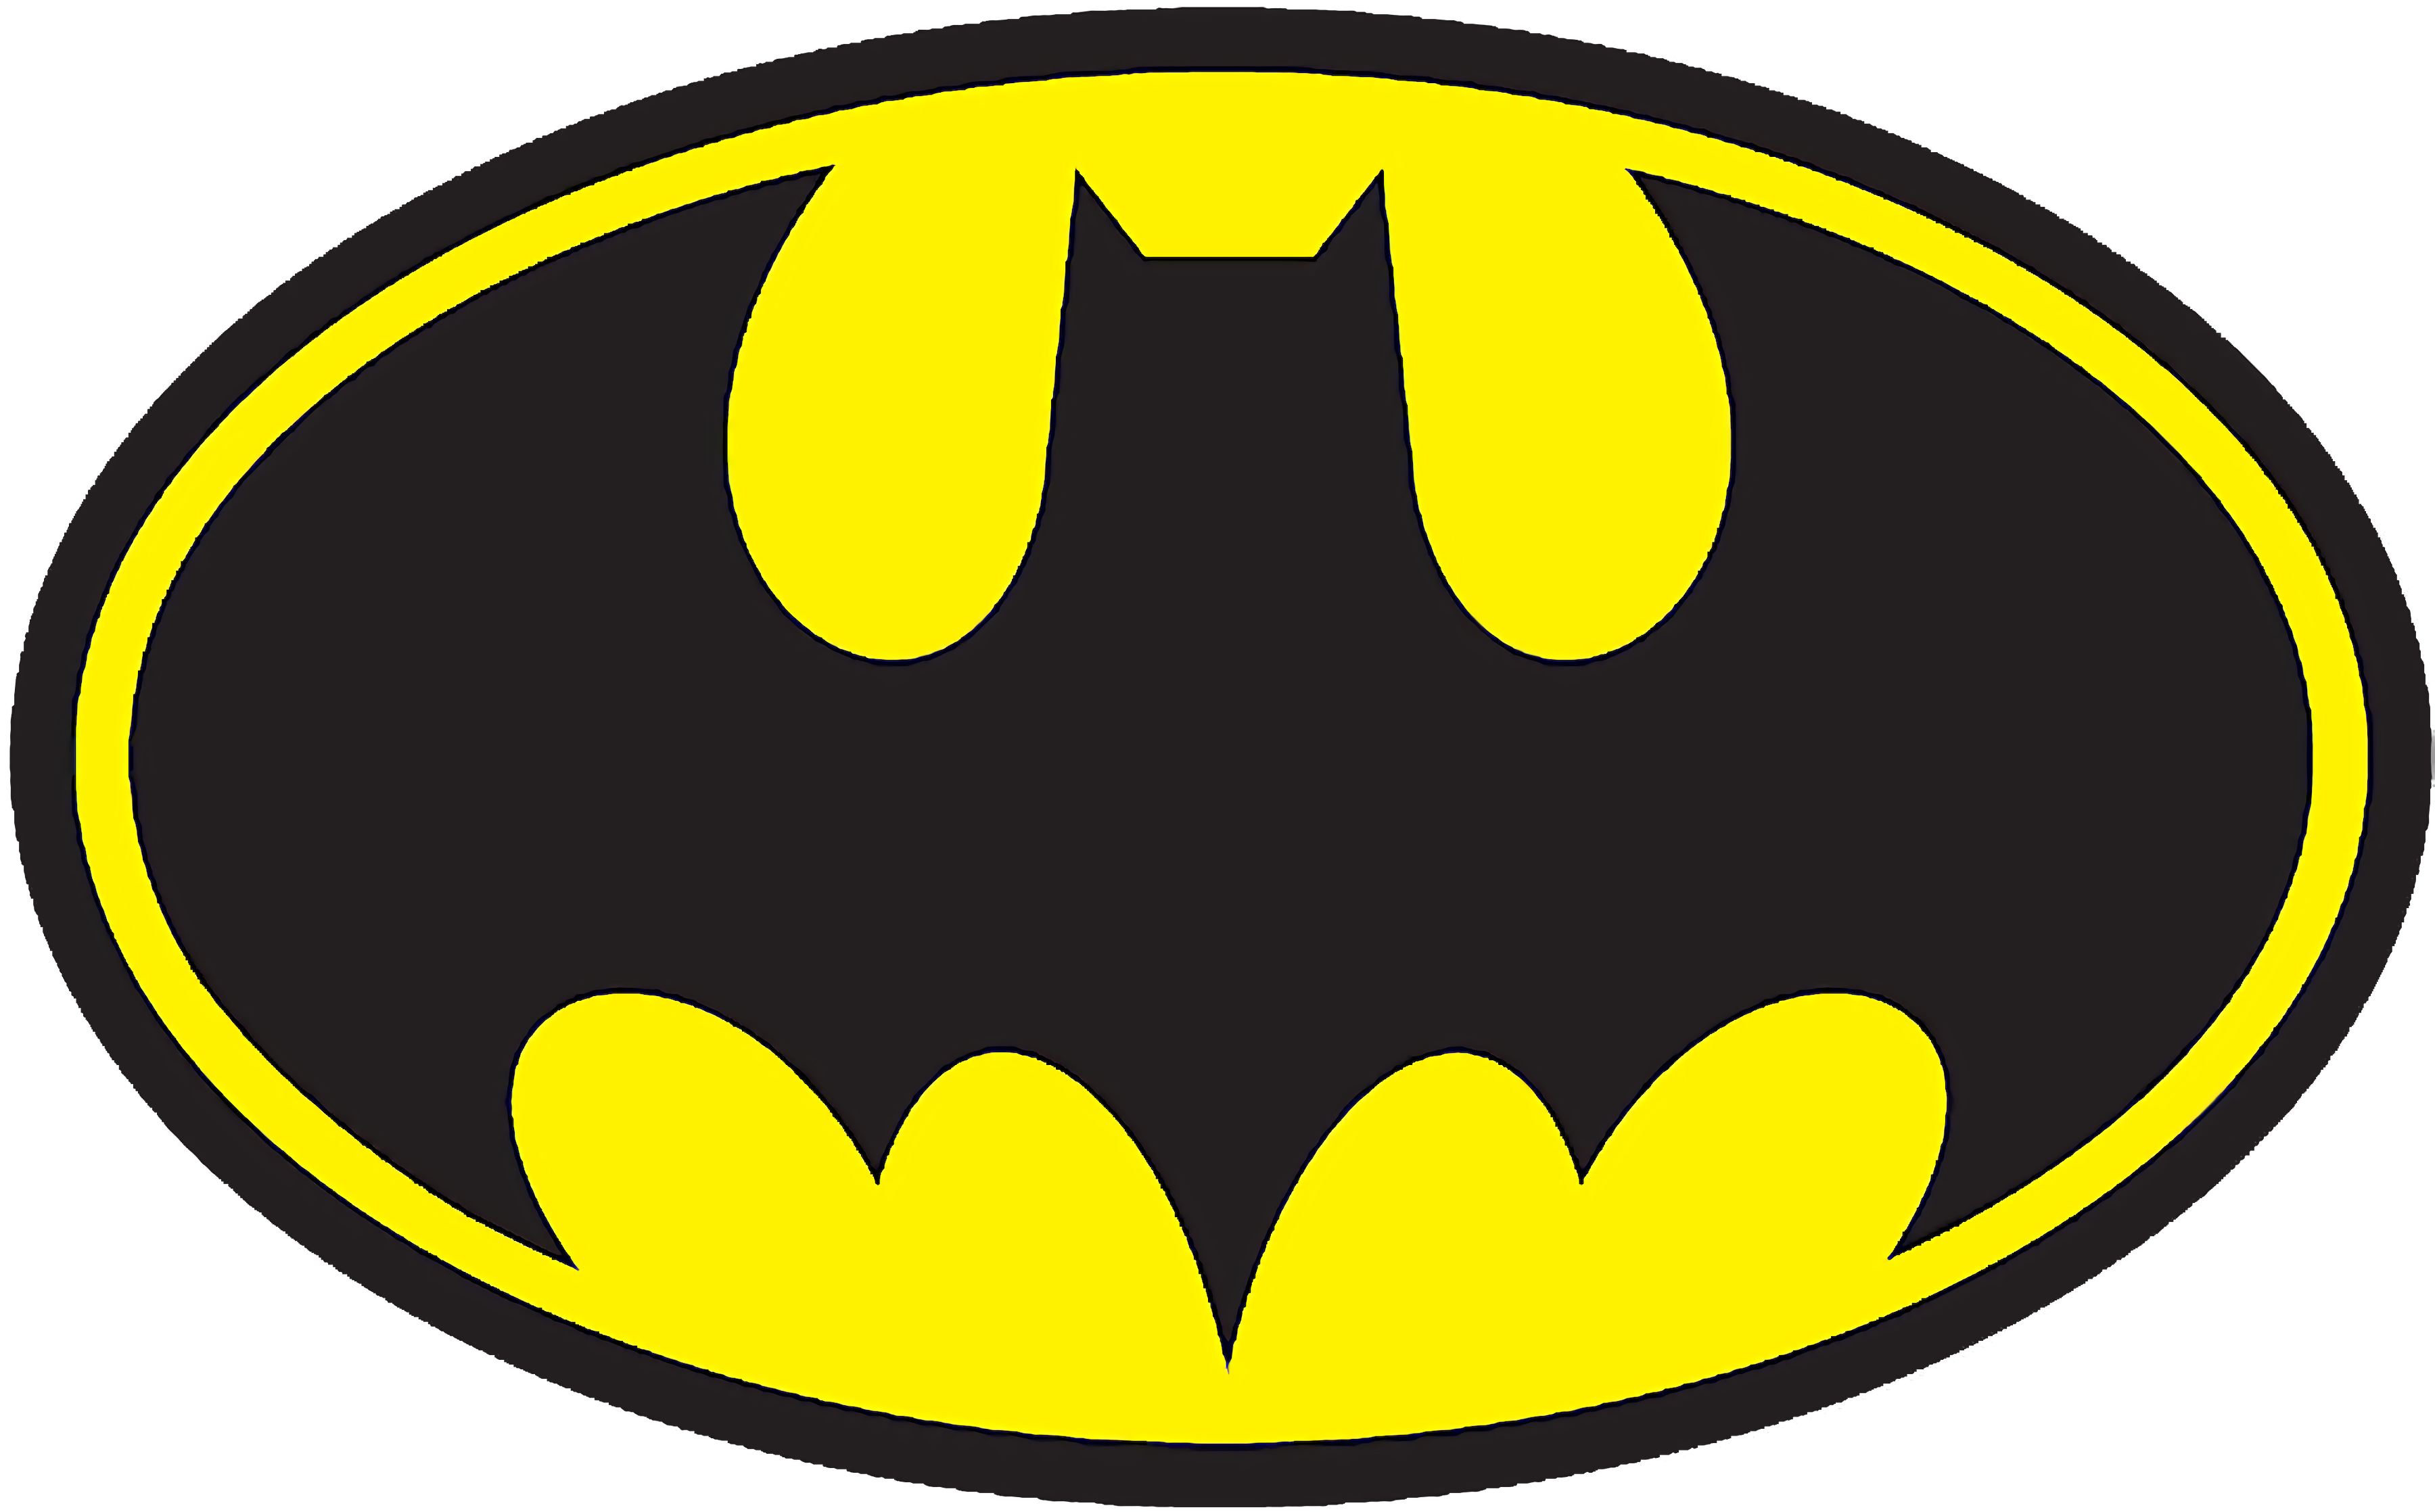 Batman-spel